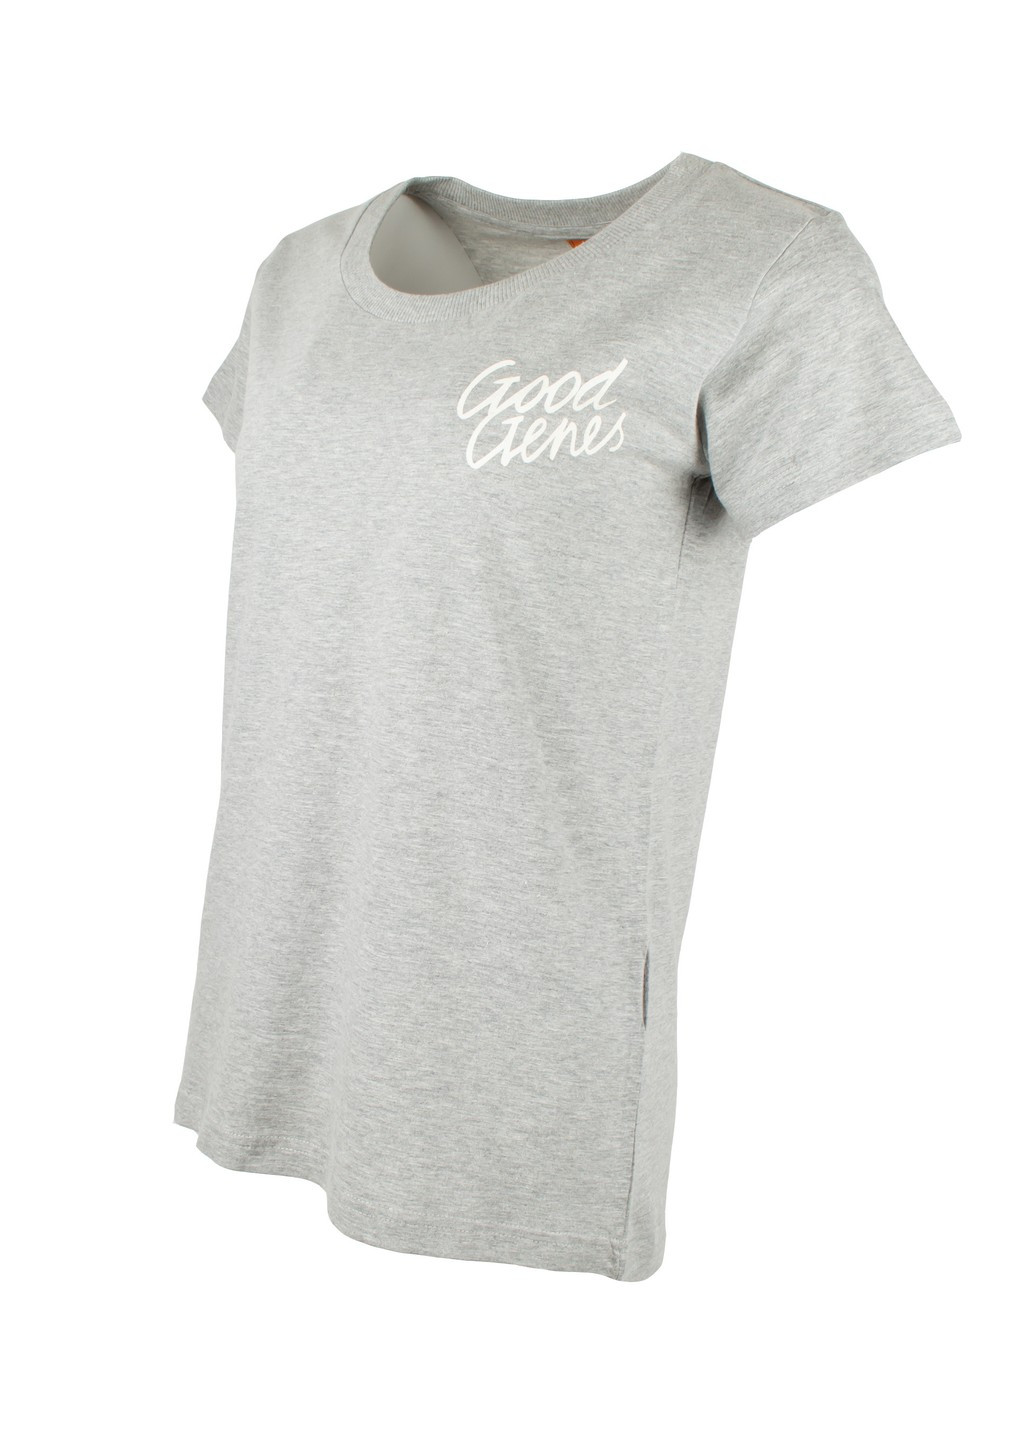 Сіра літня футболка жіноча сіра 011220-001992 Good Genes